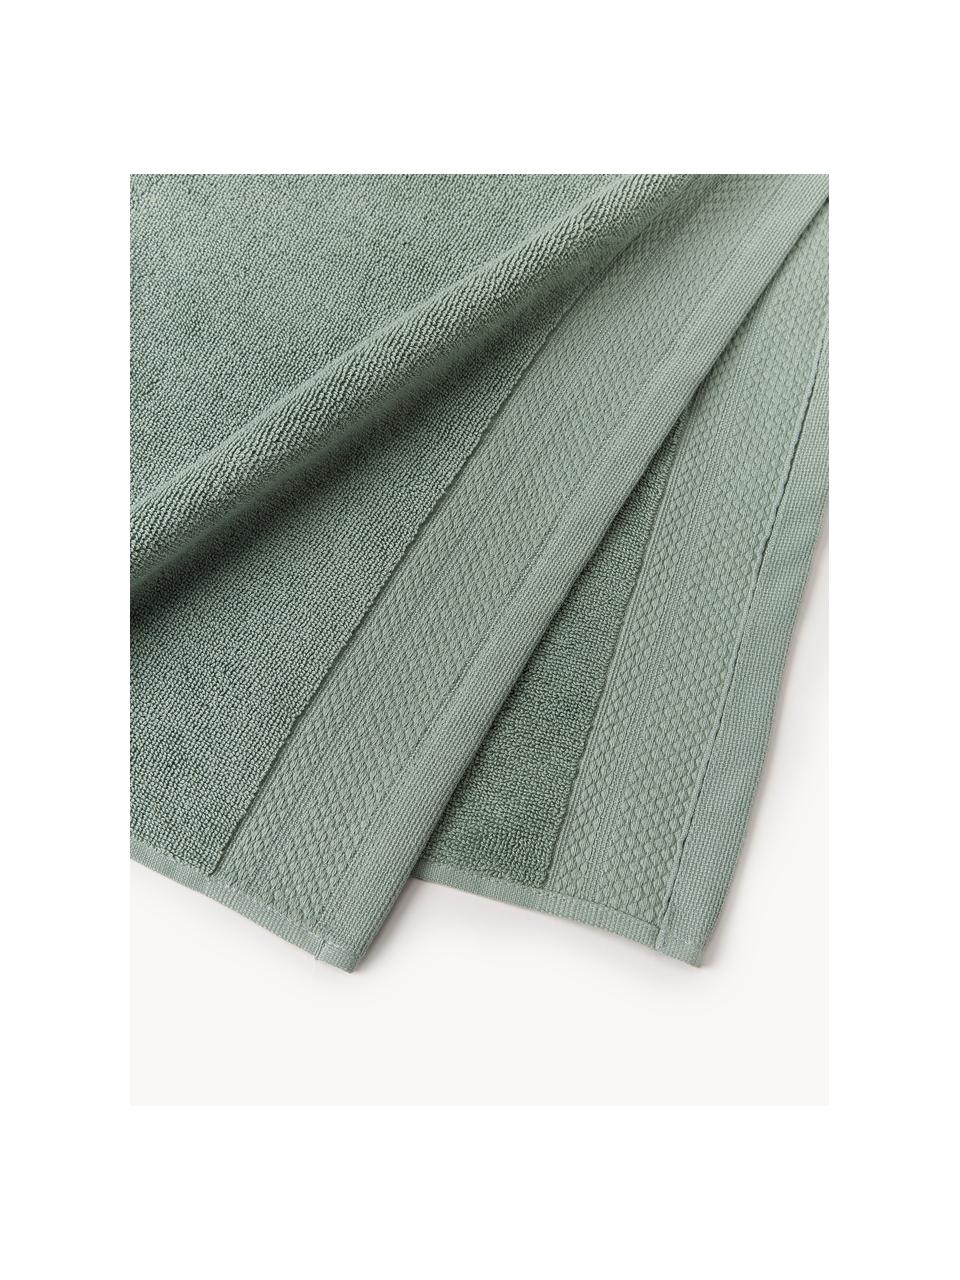 Handtuch Premium aus Bio-Baumwolle in verschiedenen Grössen, 100 % Bio-Baumwolle, GOTS-zertifiziert (von GCL International, GCL-300517)
 Schwere Qualität, 600 g/m², Salbeigrün, Handtuch, B 50 x L 100 cm